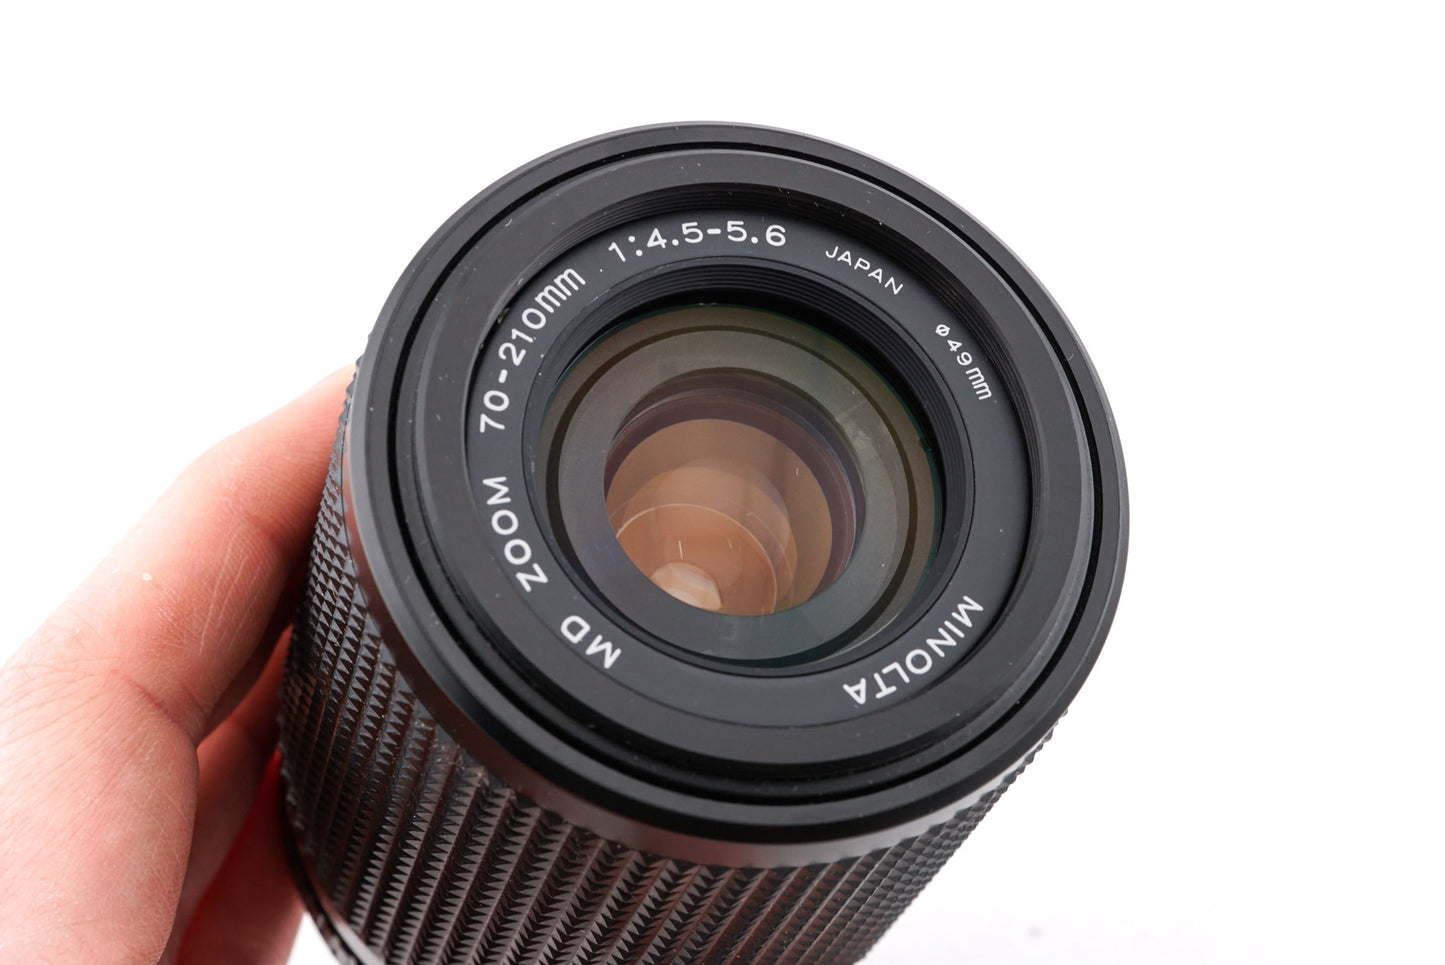 Minolta 70-210mm f4.5-5.6 MD Zoom